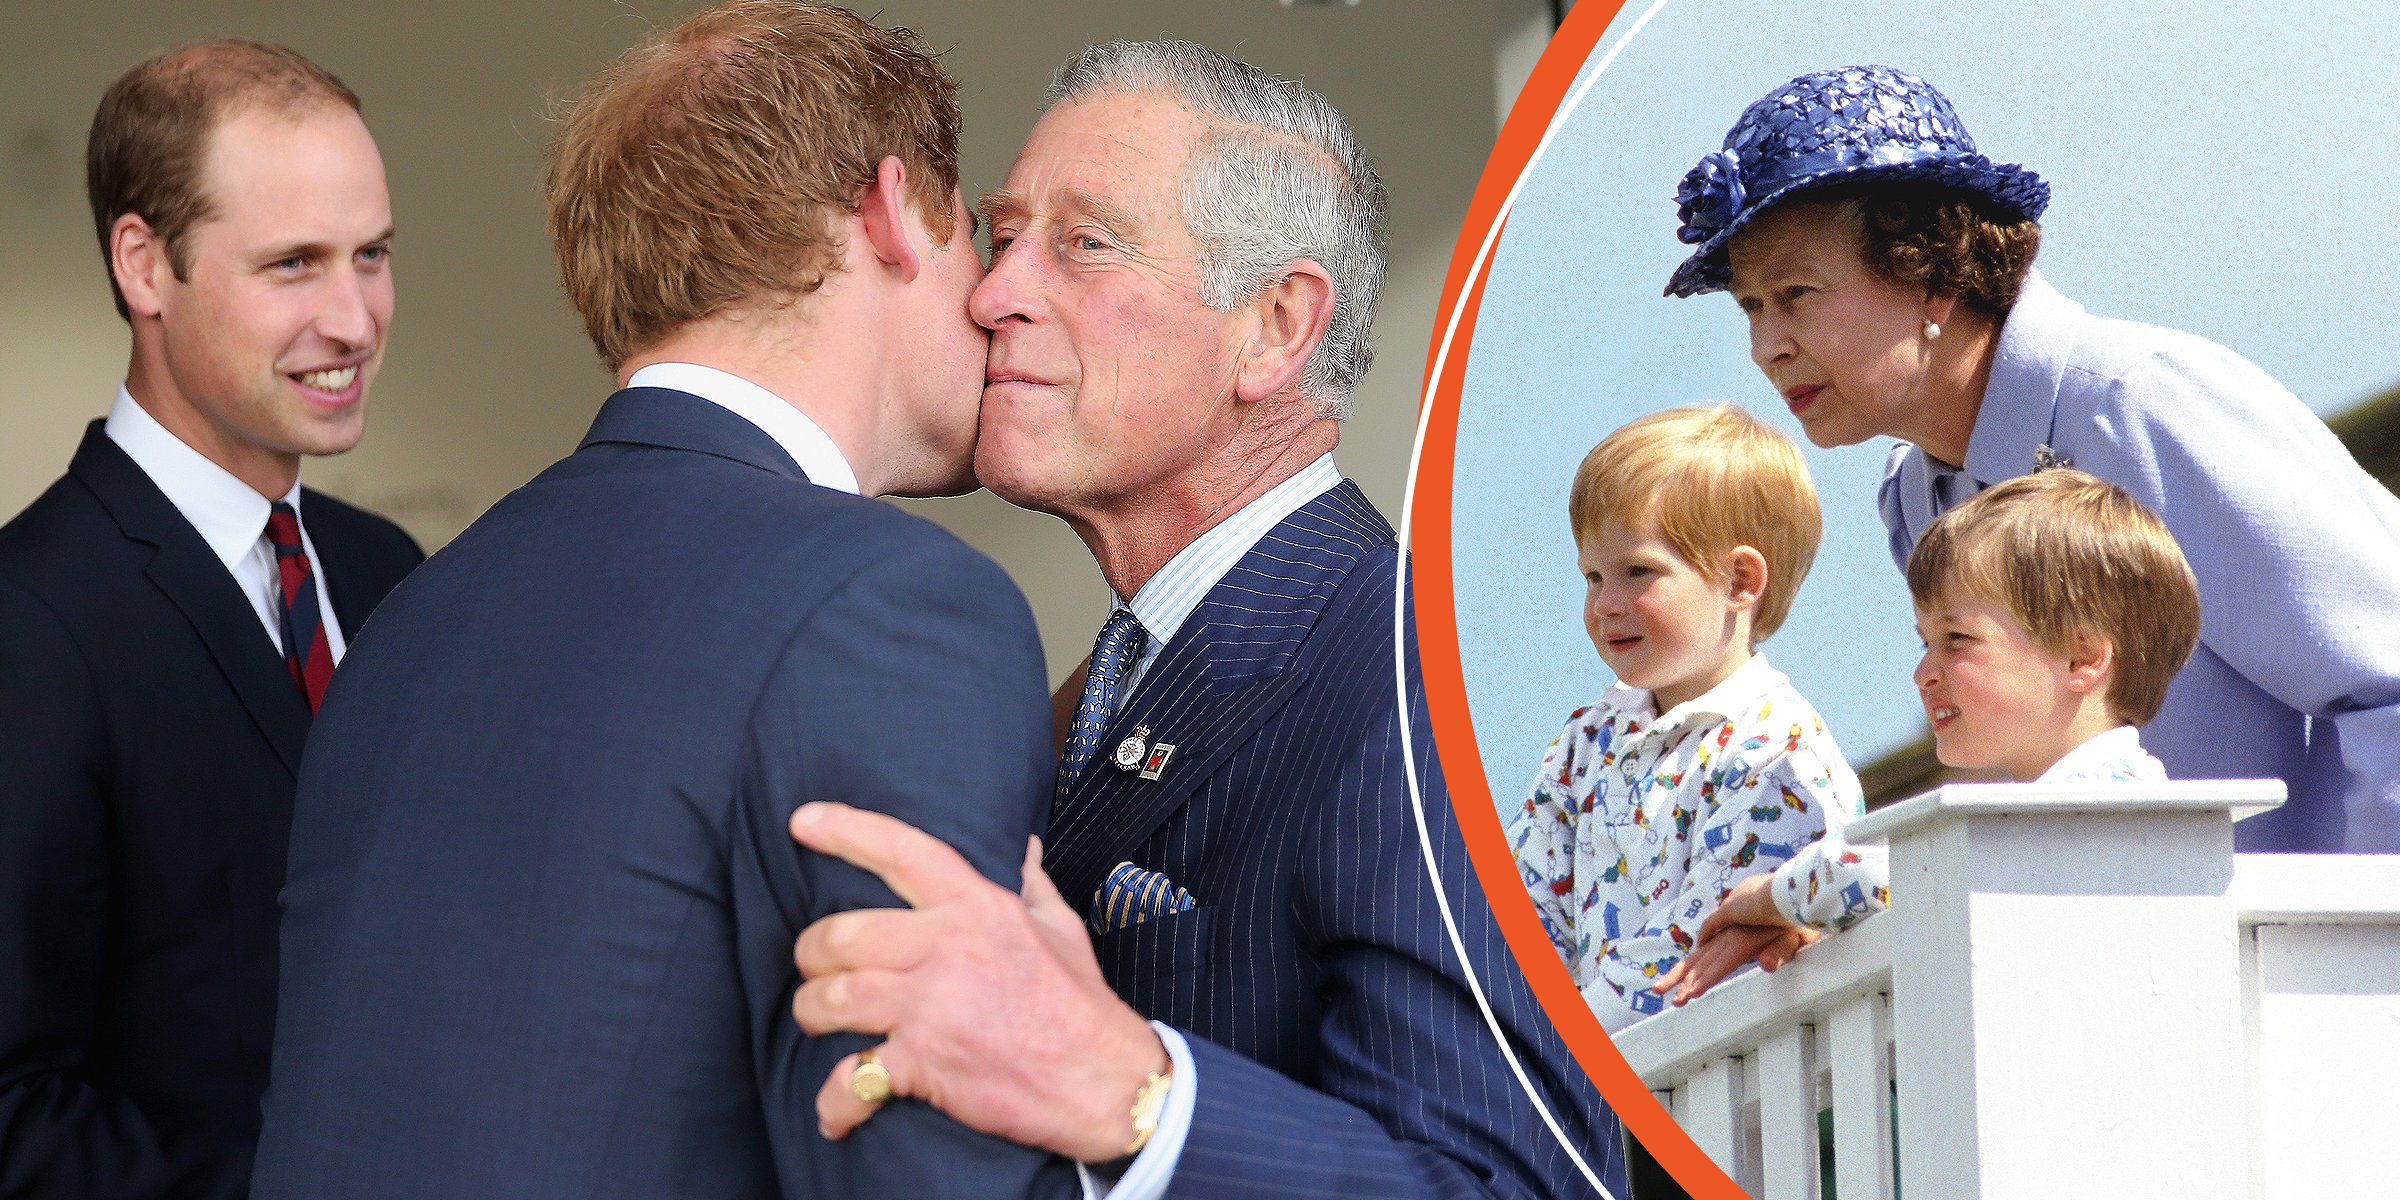 Le roi Charles III, le prince Harry et le prince William | La reine Elizabeth II, le prince William et le prince Harry | Source : Getty Images